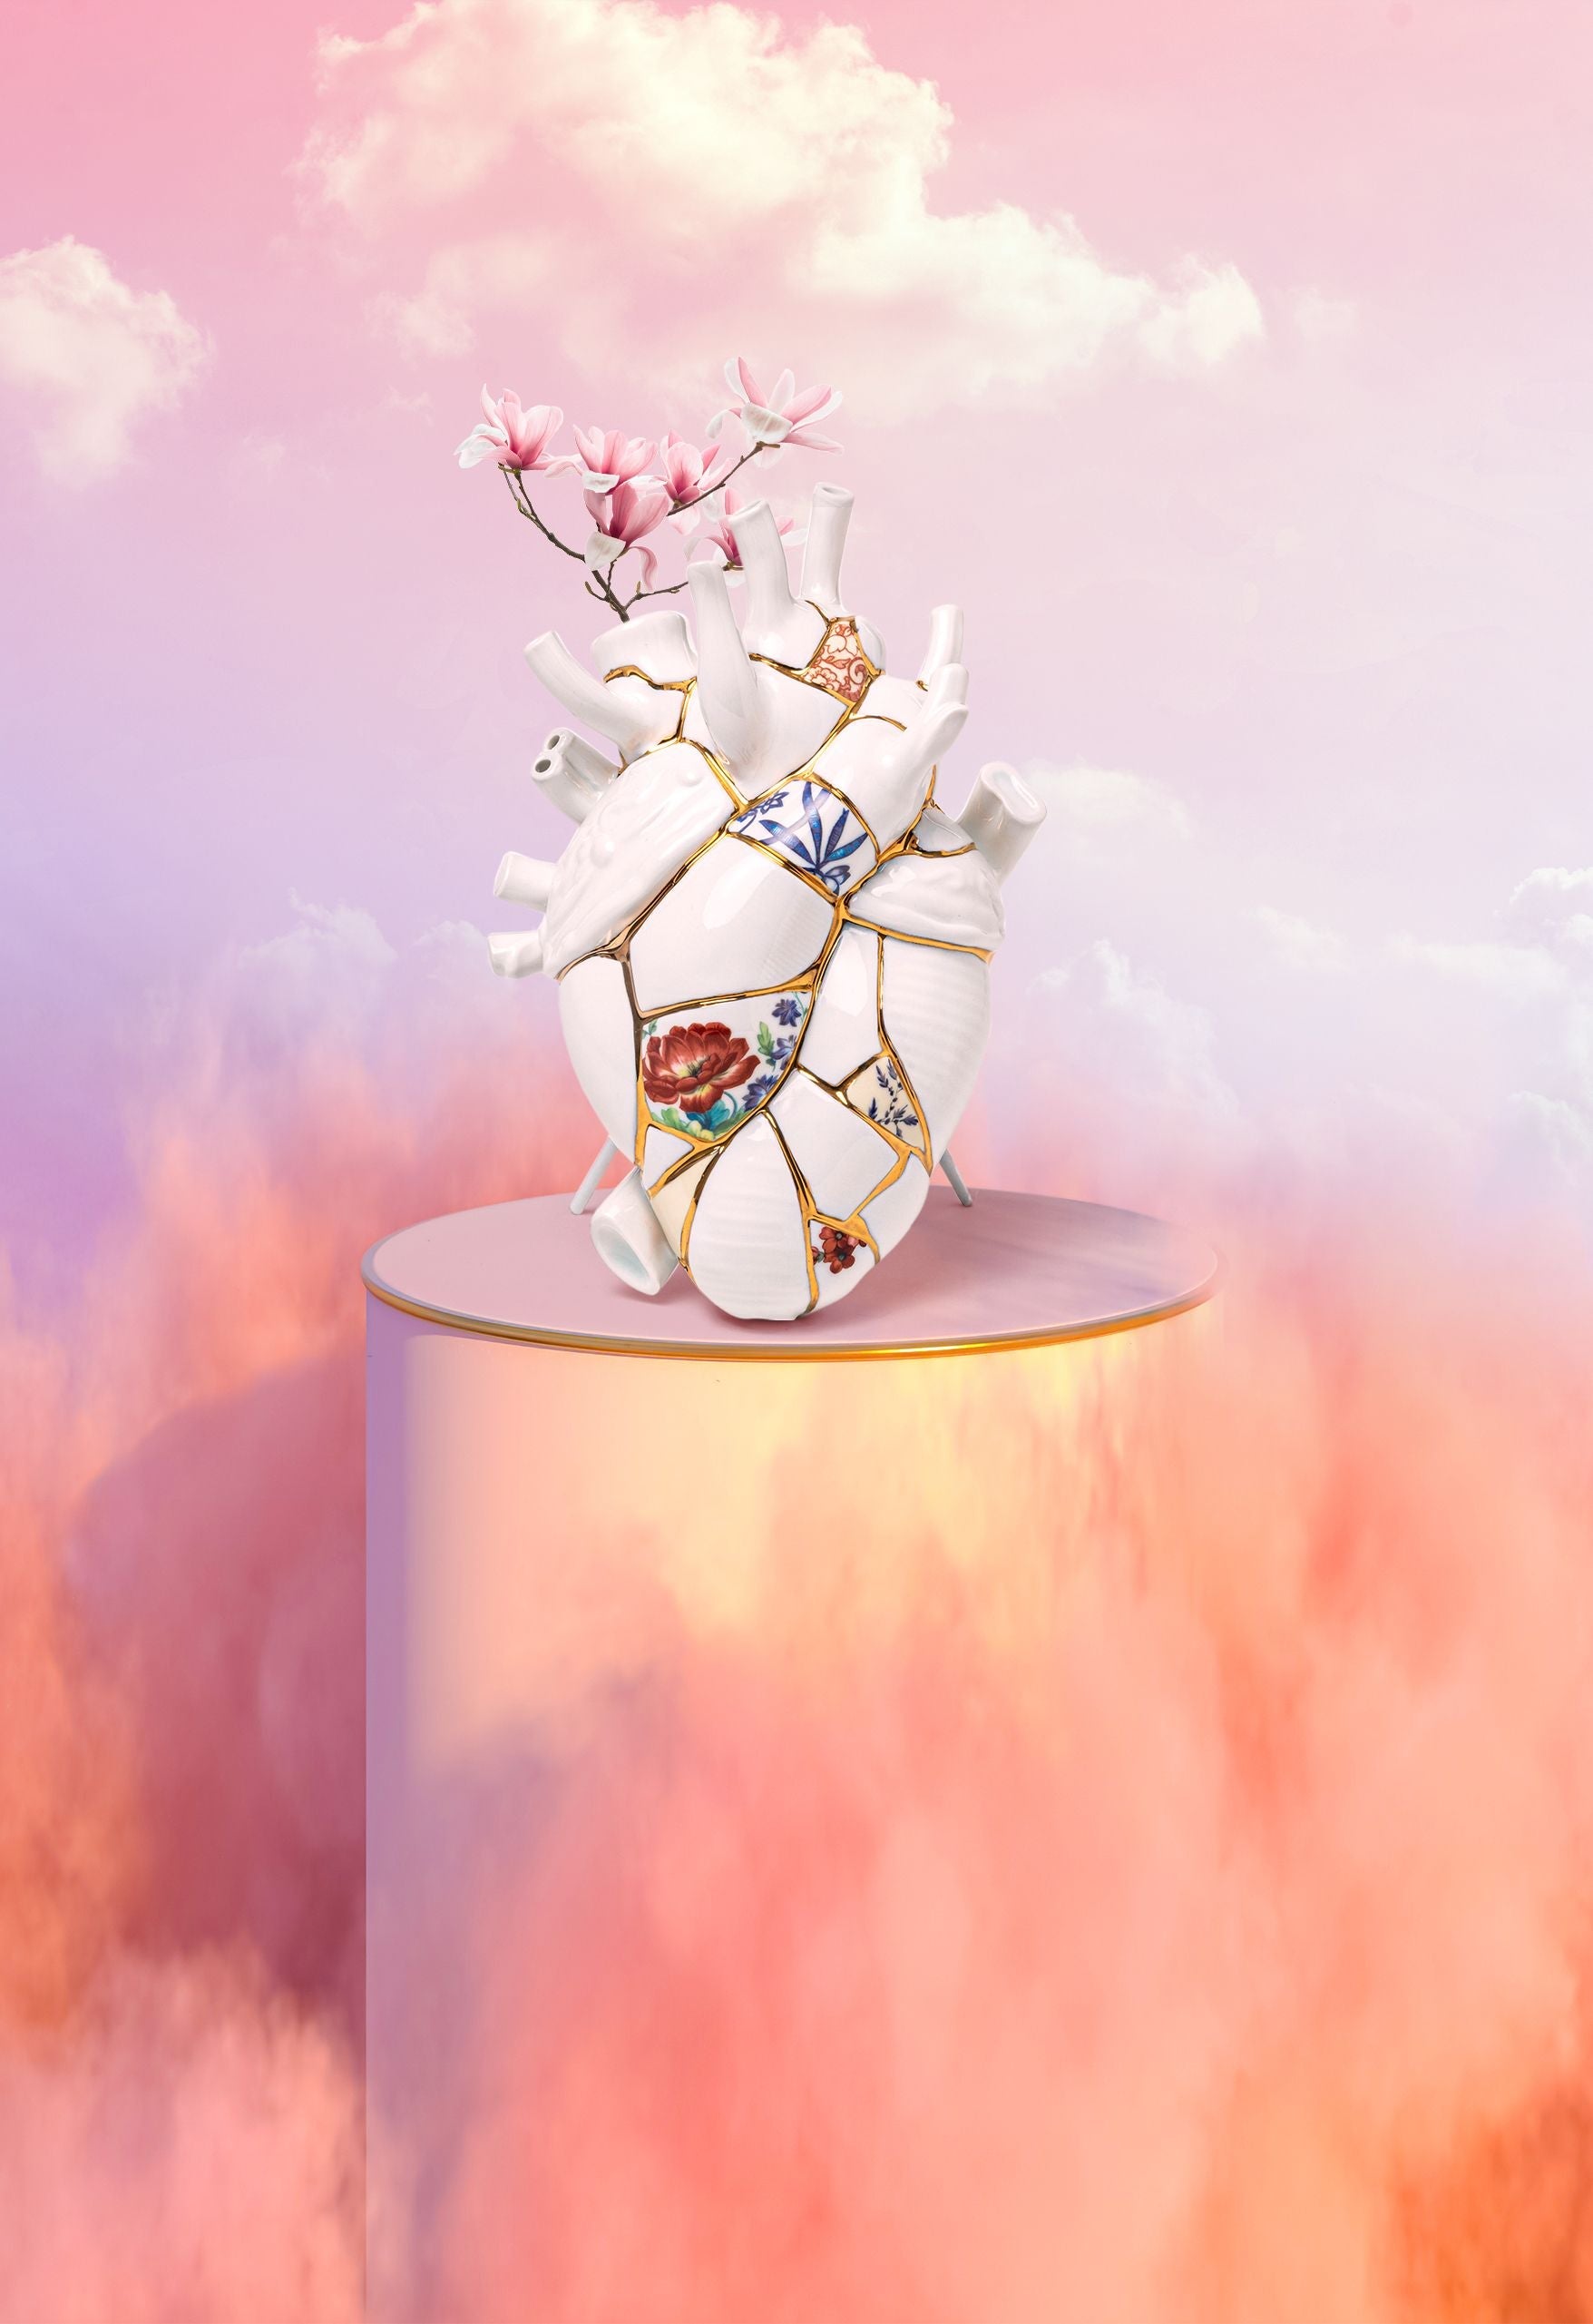 Seletti Kintsugi / Love in Bloom vase